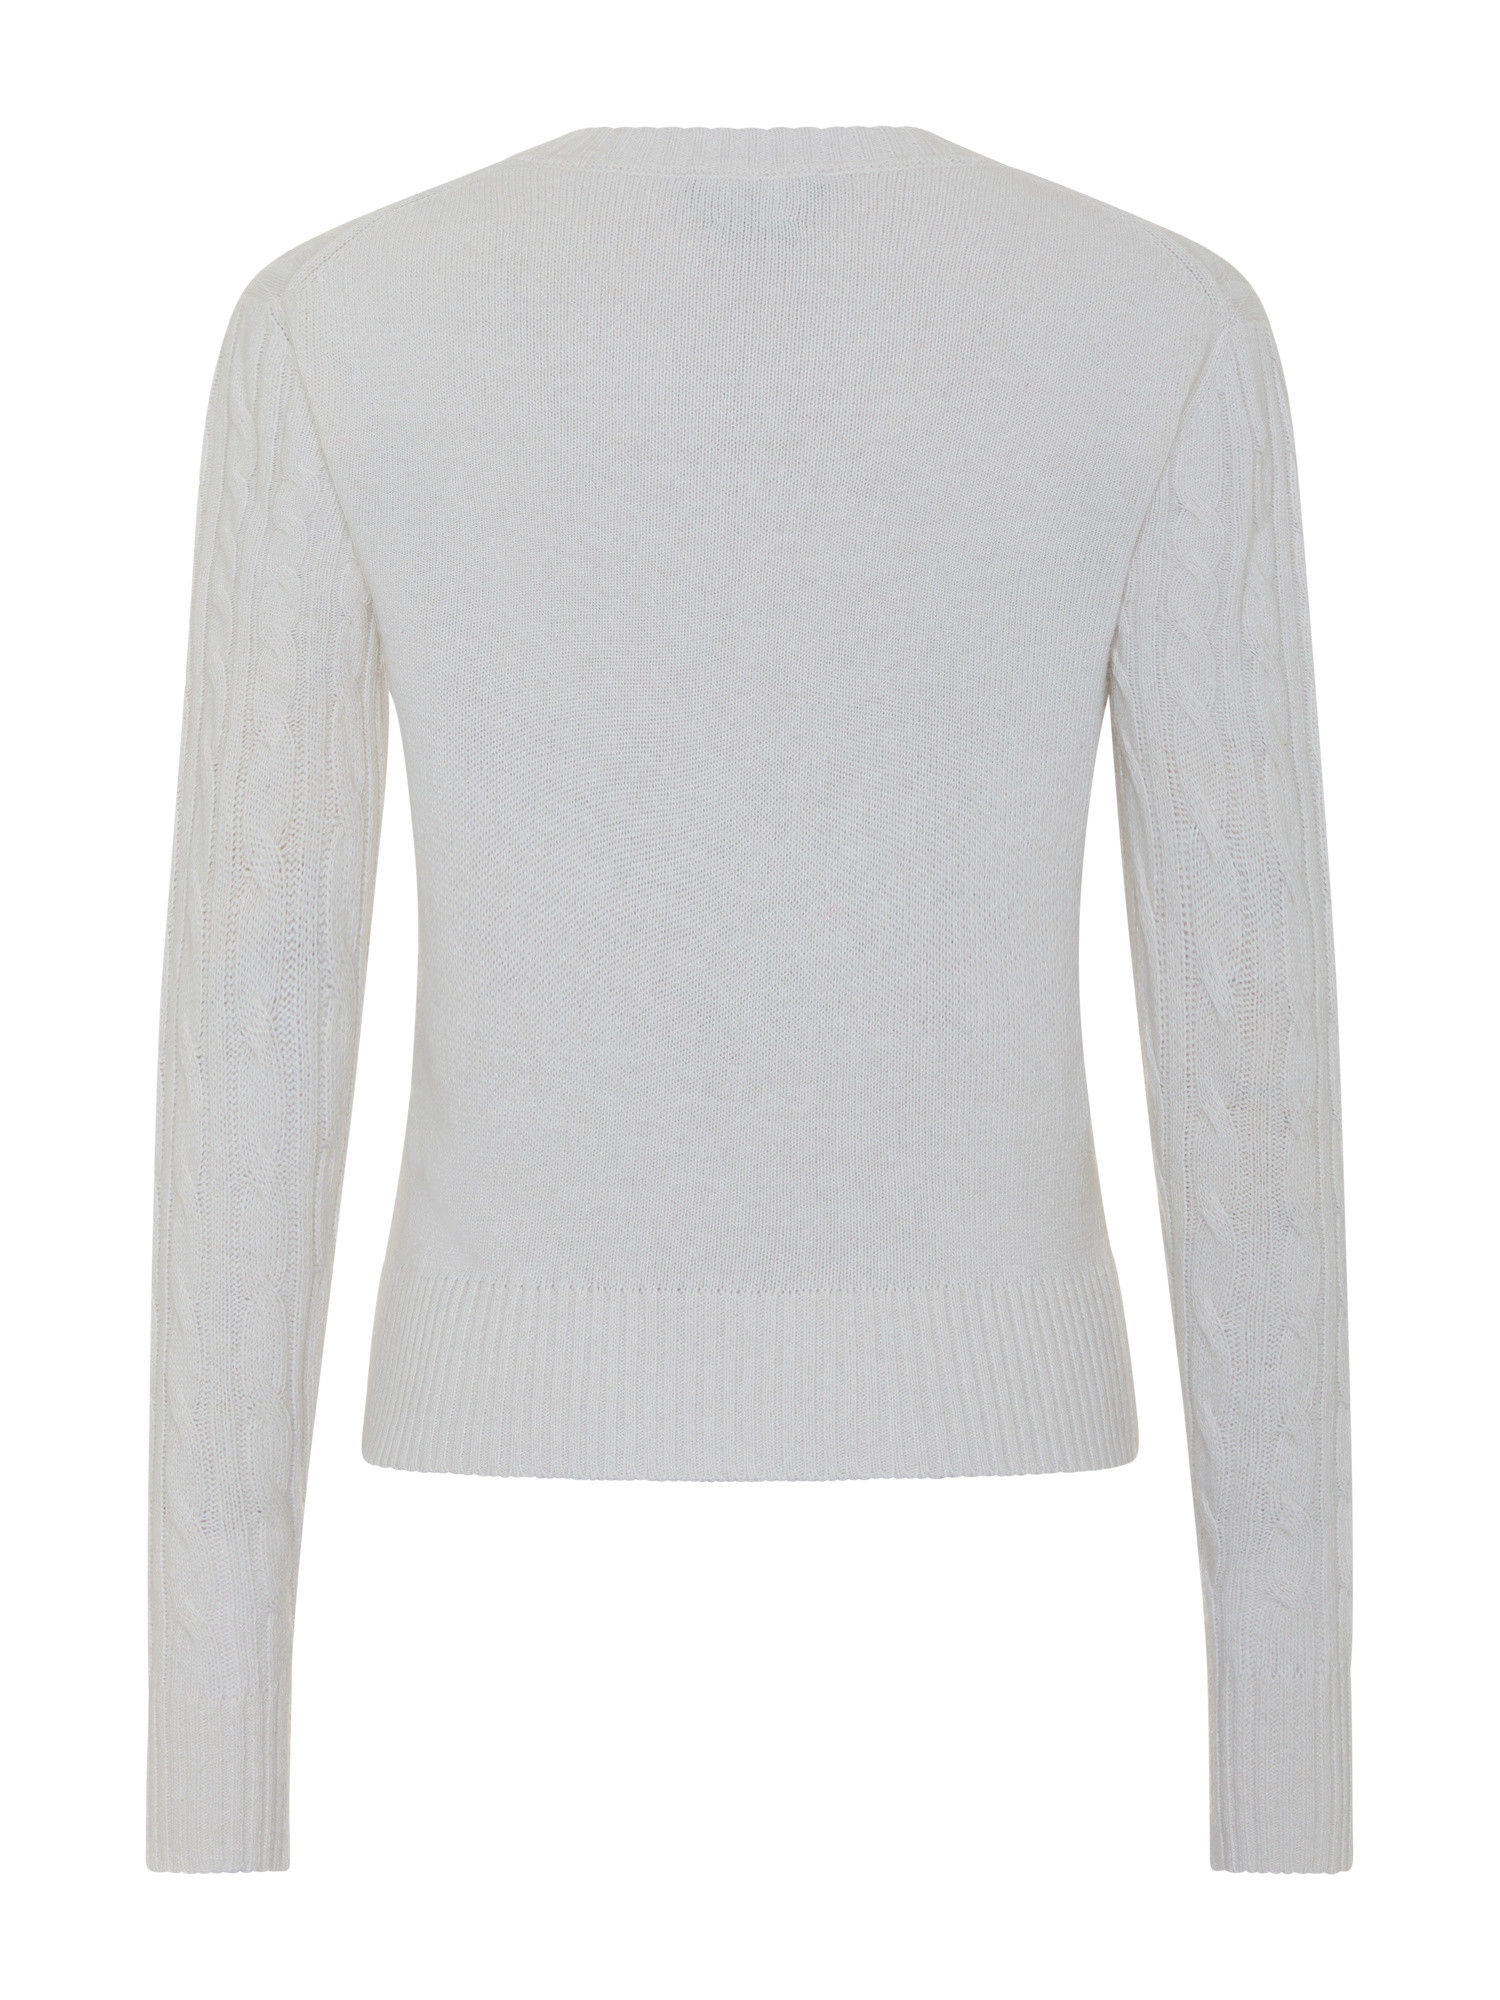 Koan - Pullover girocollo con motivo trecce, Bianco panna, large image number 1